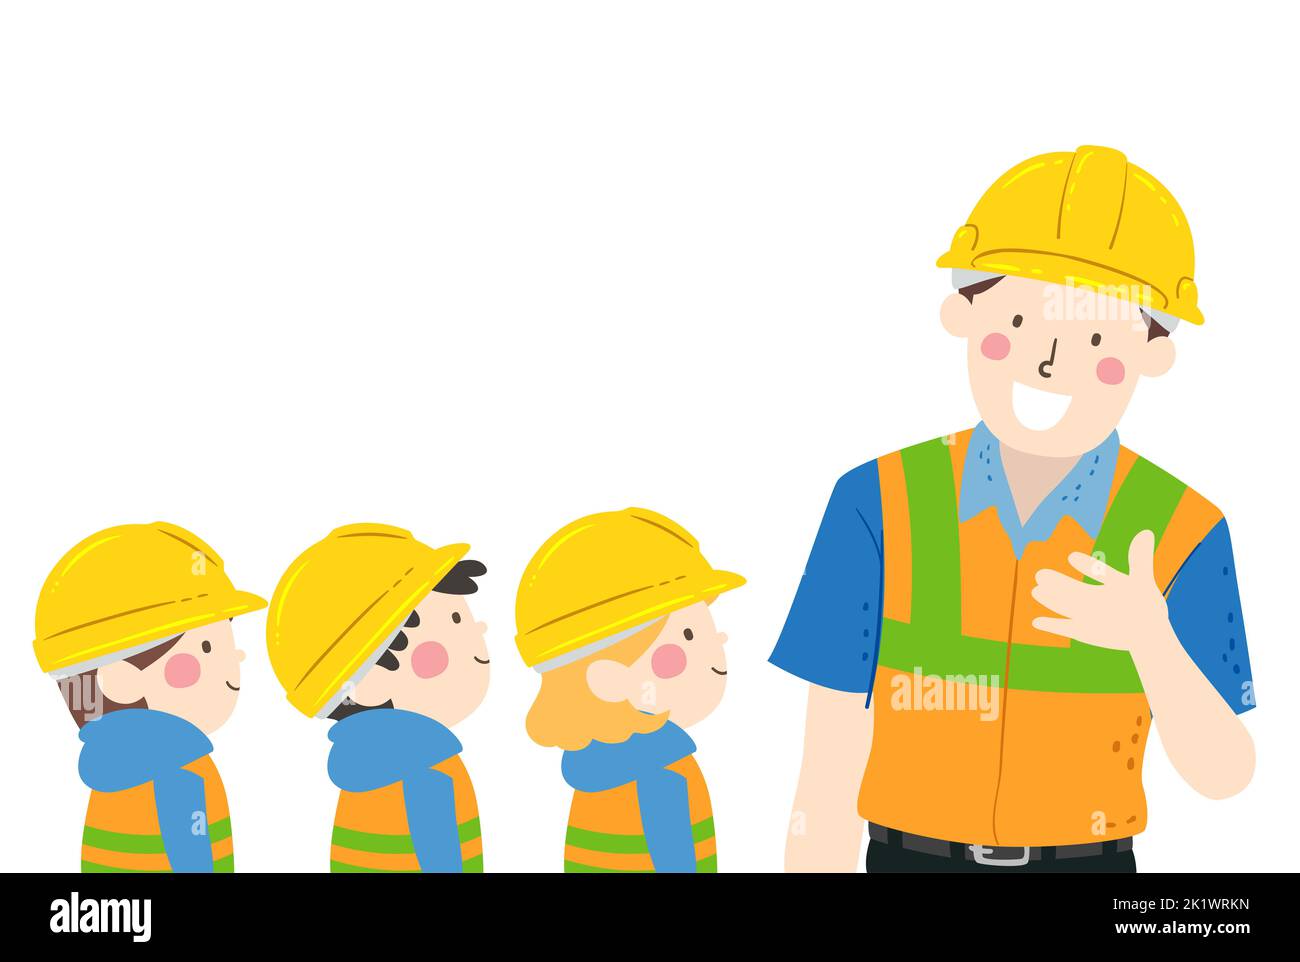 Illustrazione di bambini che indossano il cappello duro giallo e il gilet riflettente che ascoltano ad un tecnico che parla Foto Stock